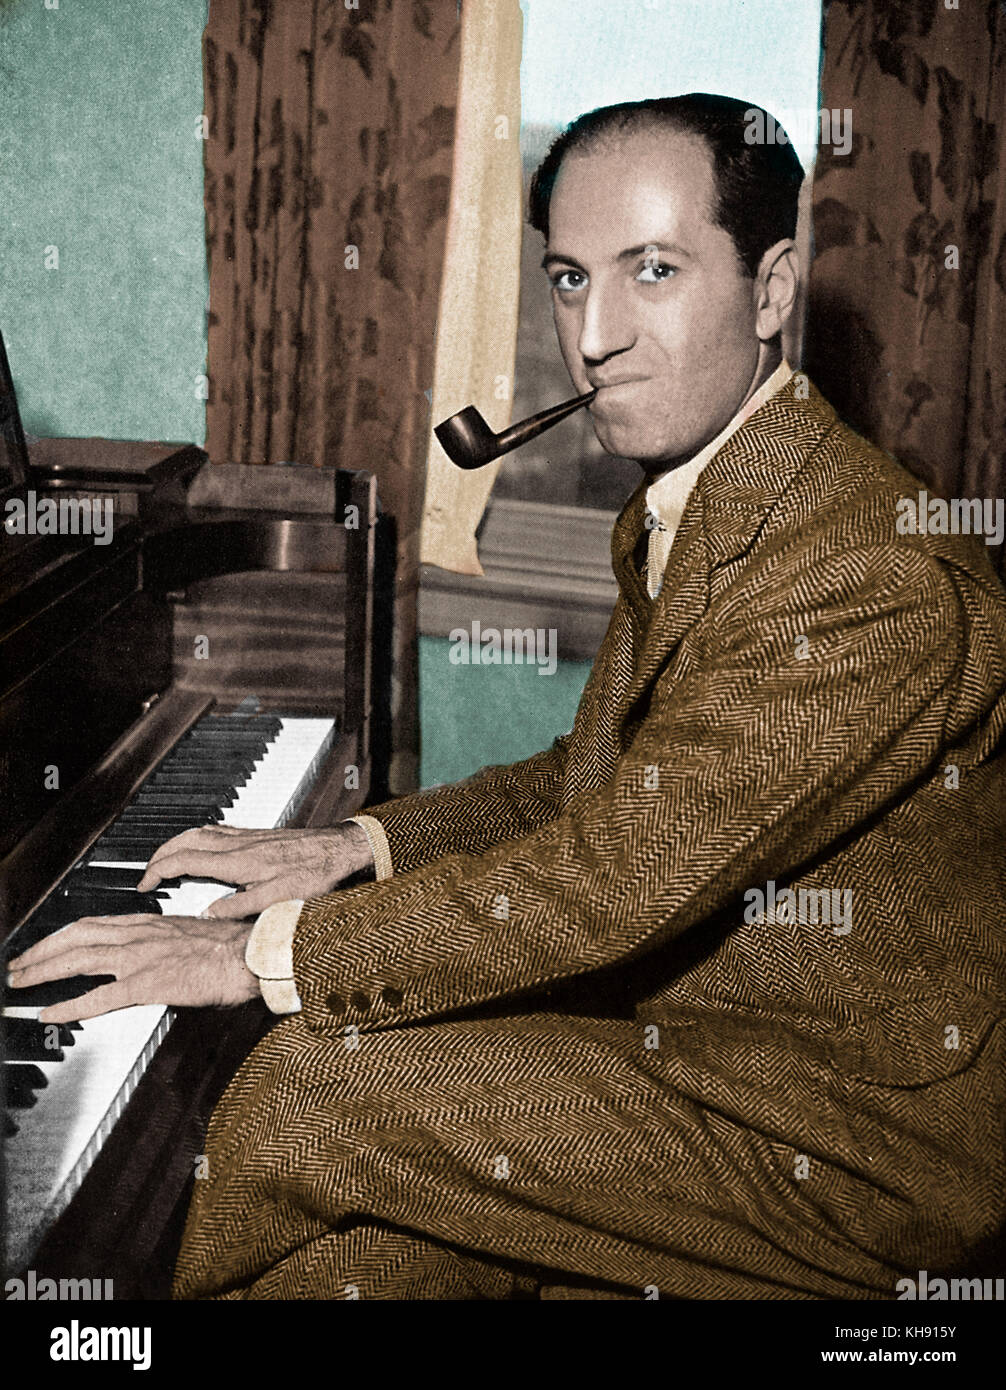 George Gershwin: tocando el piano con pipa en la boca. Pianista y compositor norteamericano, el 26 de septiembre de 1898 - 11 de julio de 1937 Foto de stock